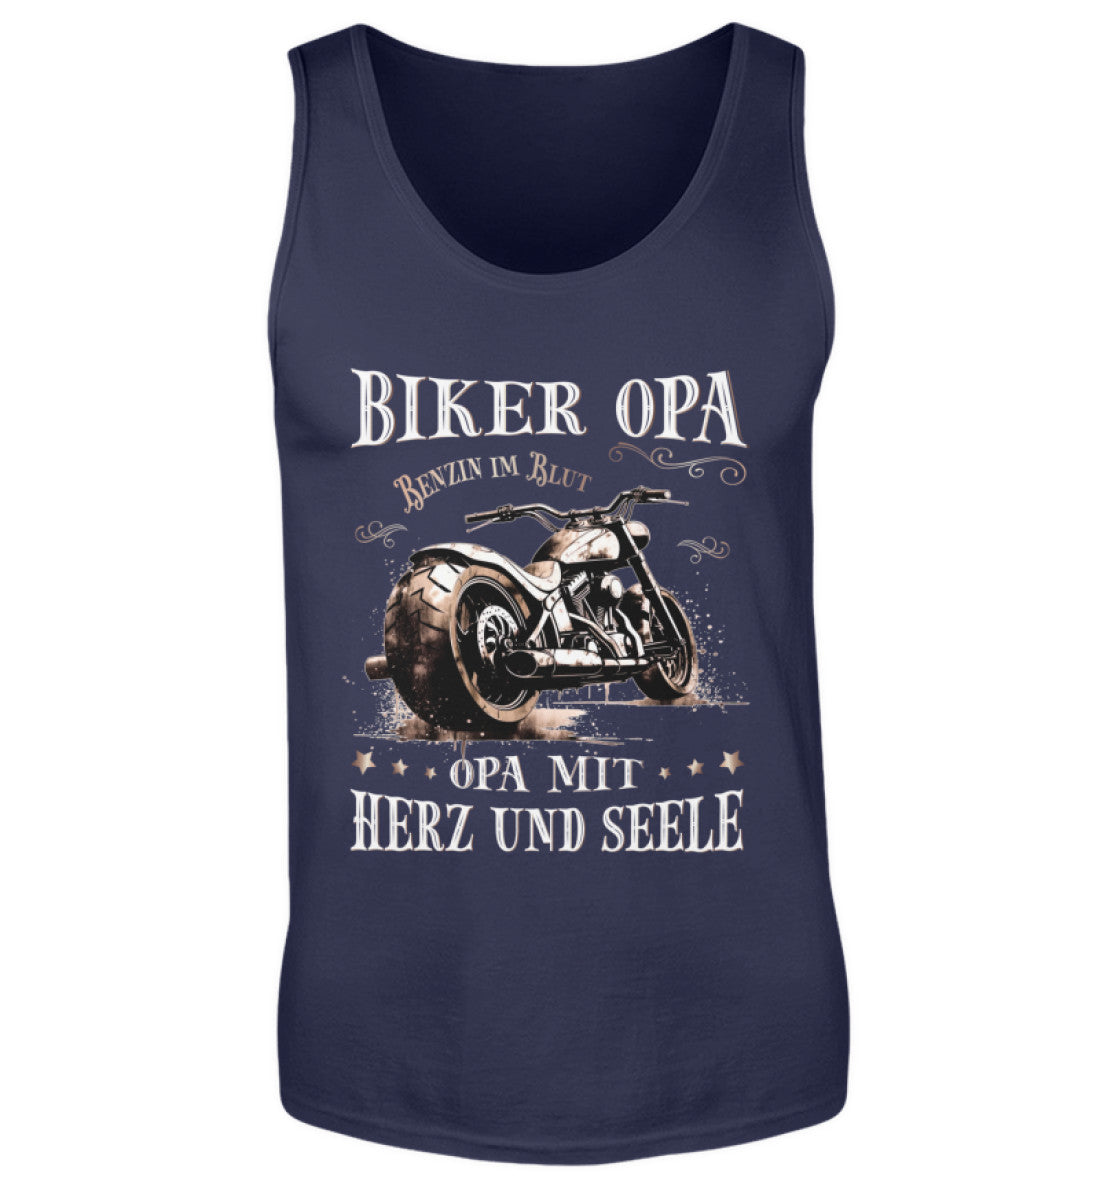 Ein Biker Tanktop für Motorradfahrer von Wingbikers mit dem Aufdruck, Biker Opa - Benzin im Blut - Opa mit Herz und Seele, in navy blau.